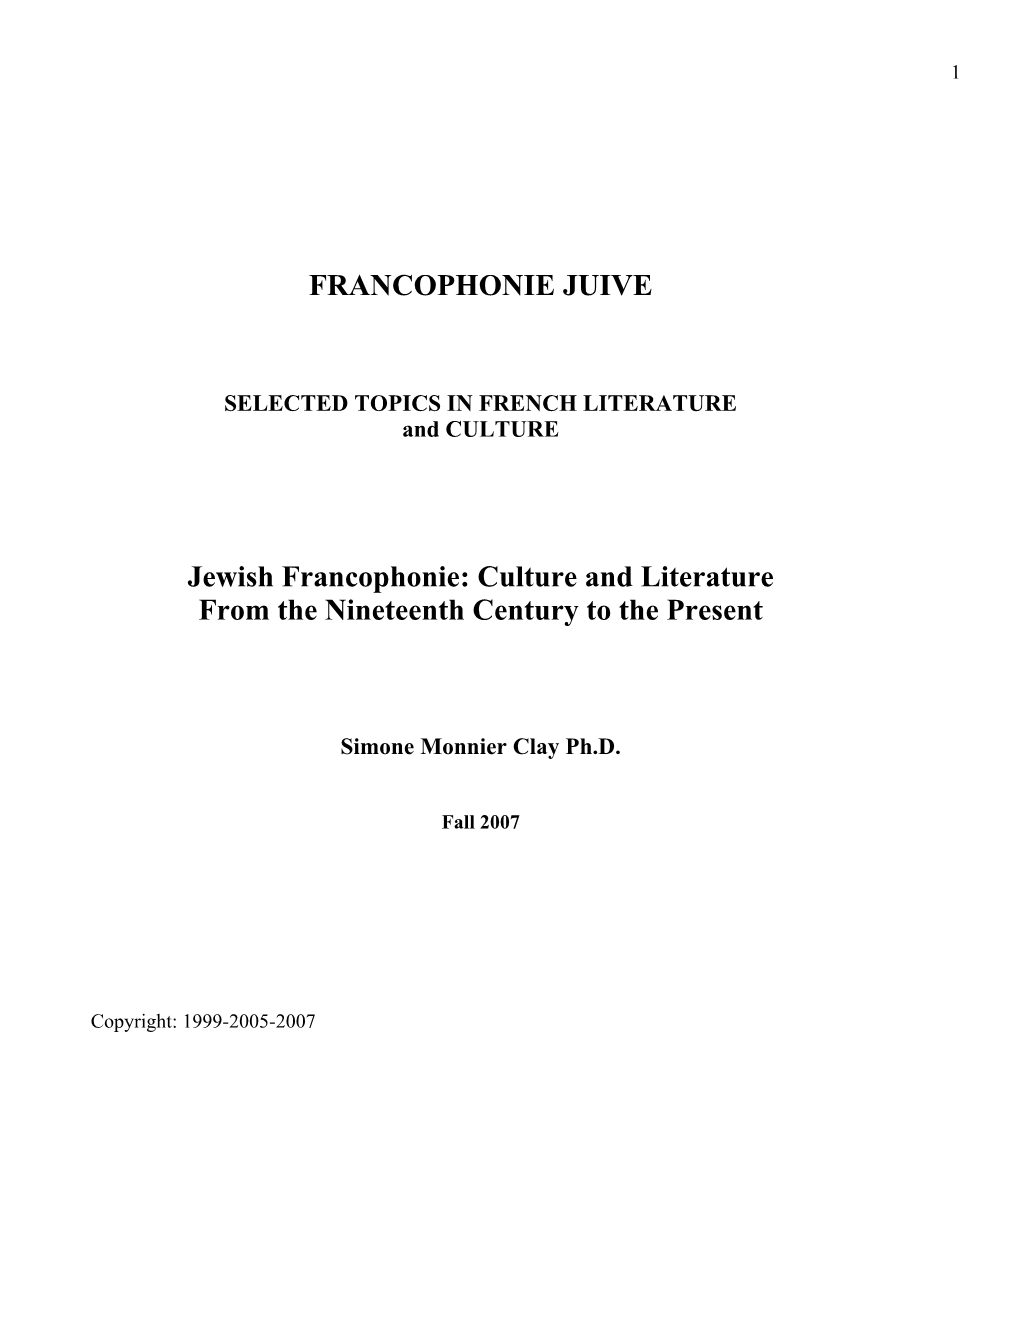 Jewish Francophone Culture and Literature